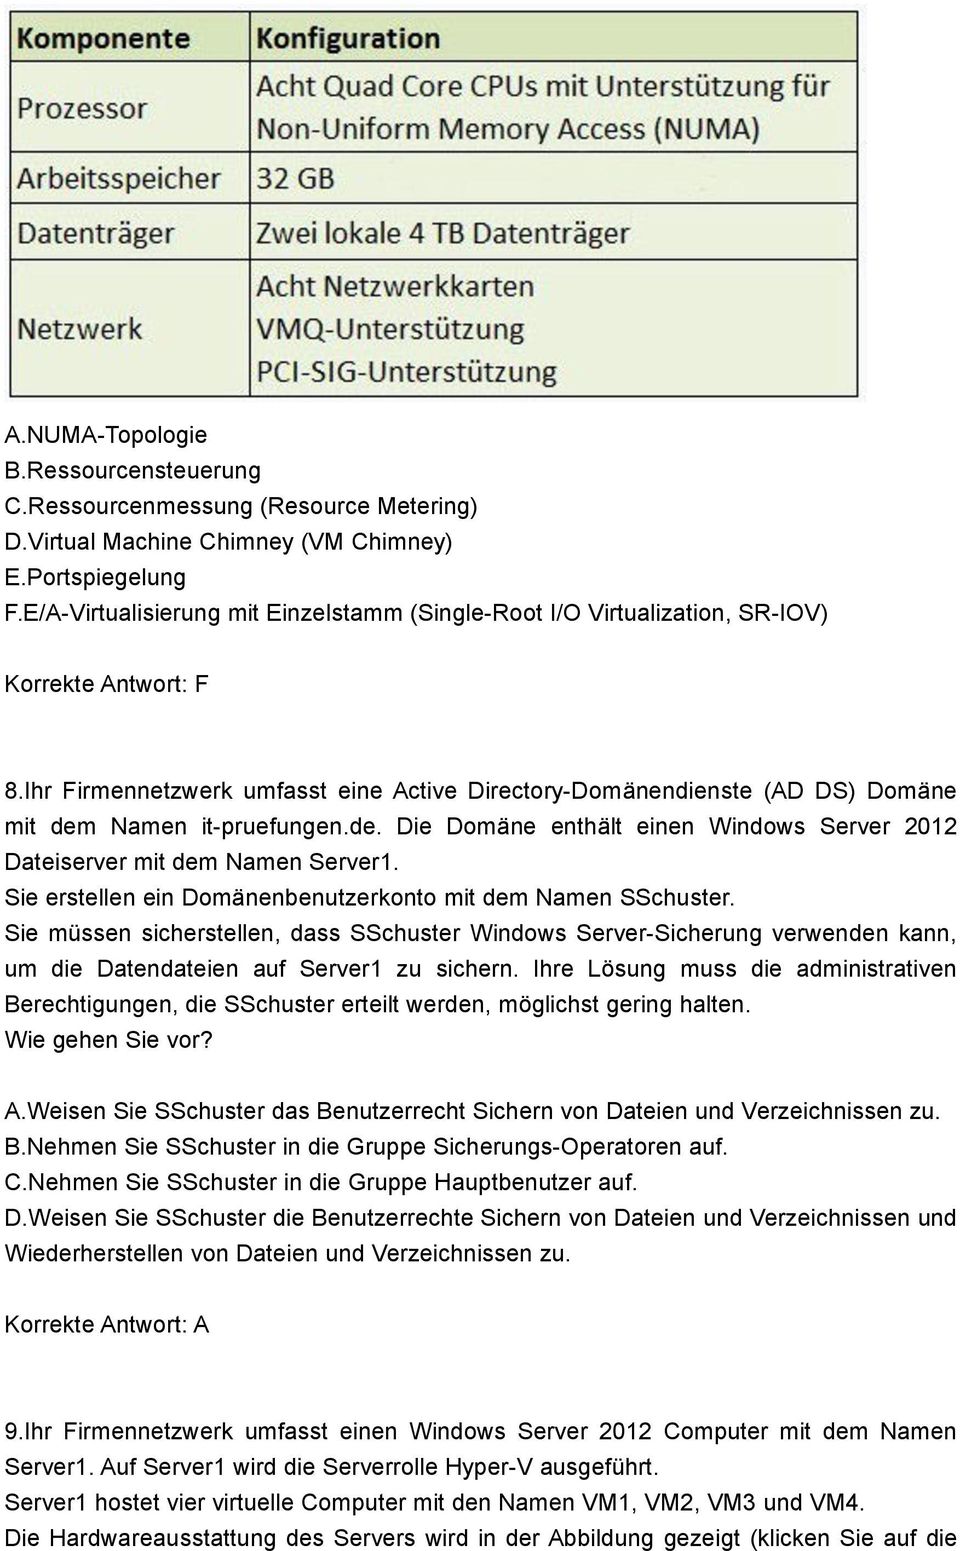 Ihr Firmennetzwerk umfasst eine Active Directory-Domänendienste (AD DS) Domäne mit dem Namen it-pruefungen.de. Die Domäne enthält einen Windows Server 2012 Dateiserver mit dem Namen Server1.